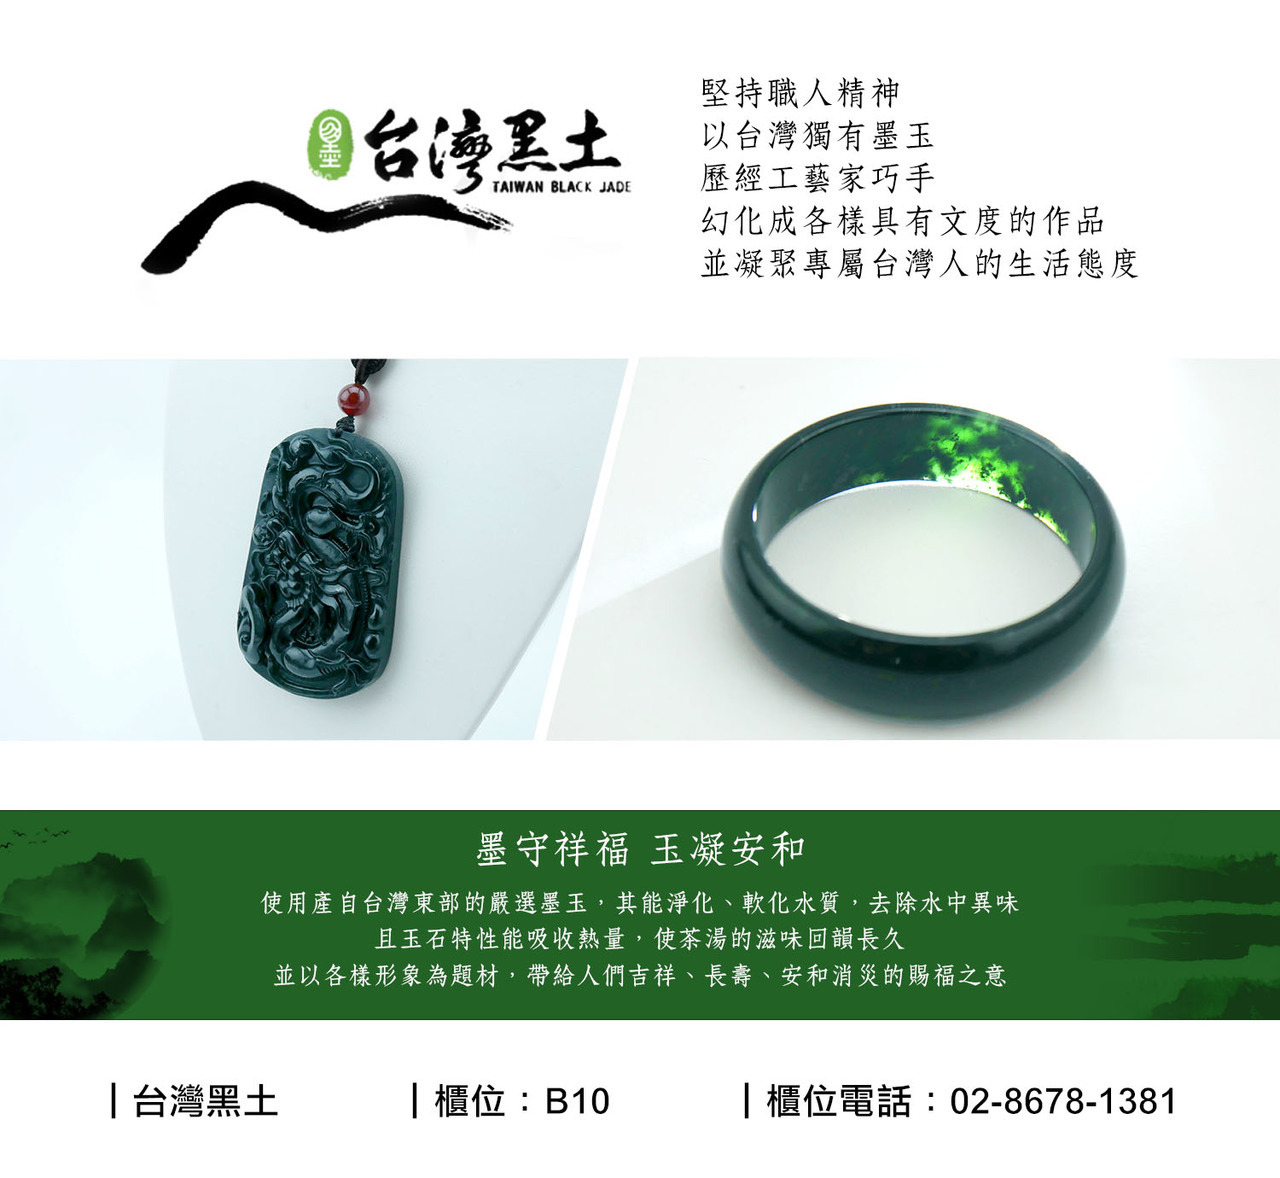 台灣黑土—玉石雕塑鶯歌光點美學館—官方網站